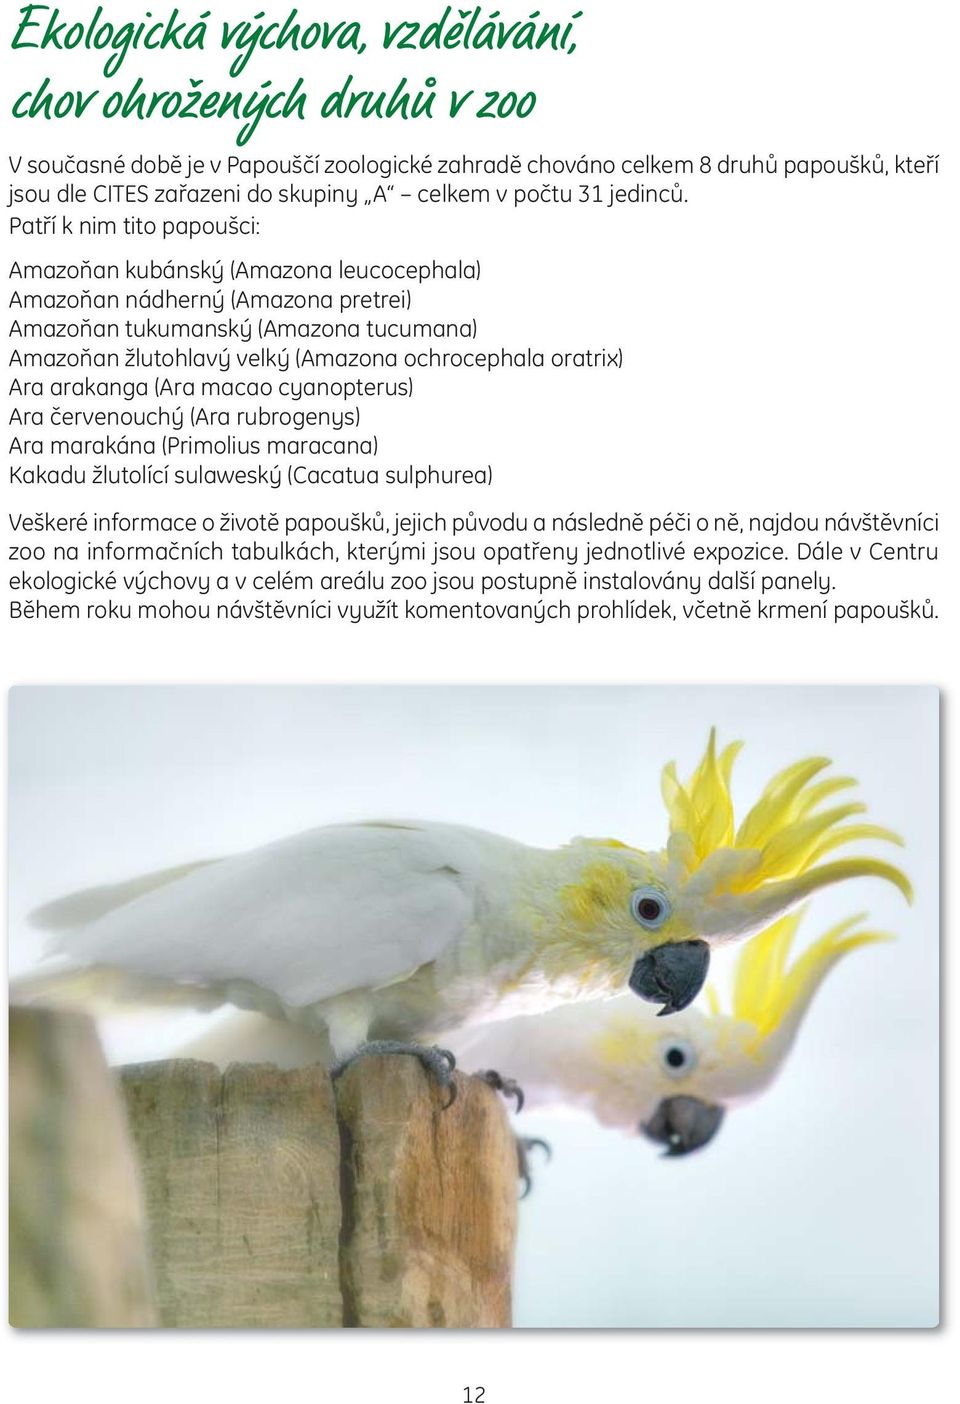 Patří k nim tito papoušci: Amazoňan kubánský (Amazona leucocephala) Amazoňan nádherný (Amazona pretrei) Amazoňan tukumanský (Amazona tucumana) Amazoňan žlutohlavý velký (Amazona ochrocephala oratrix)